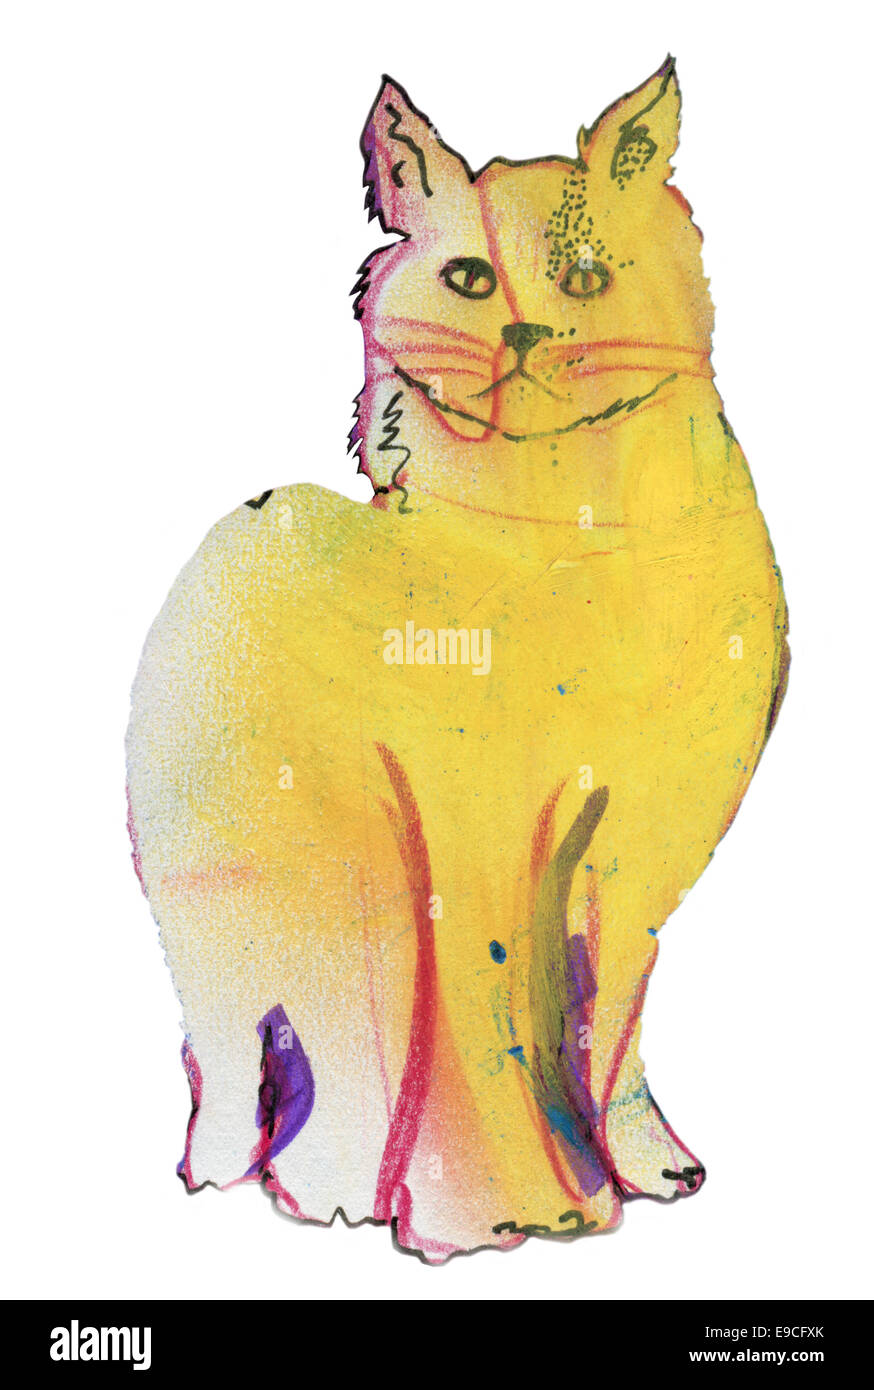 Il gatto giallo, originale disegno a pastello Foto stock - Alamy